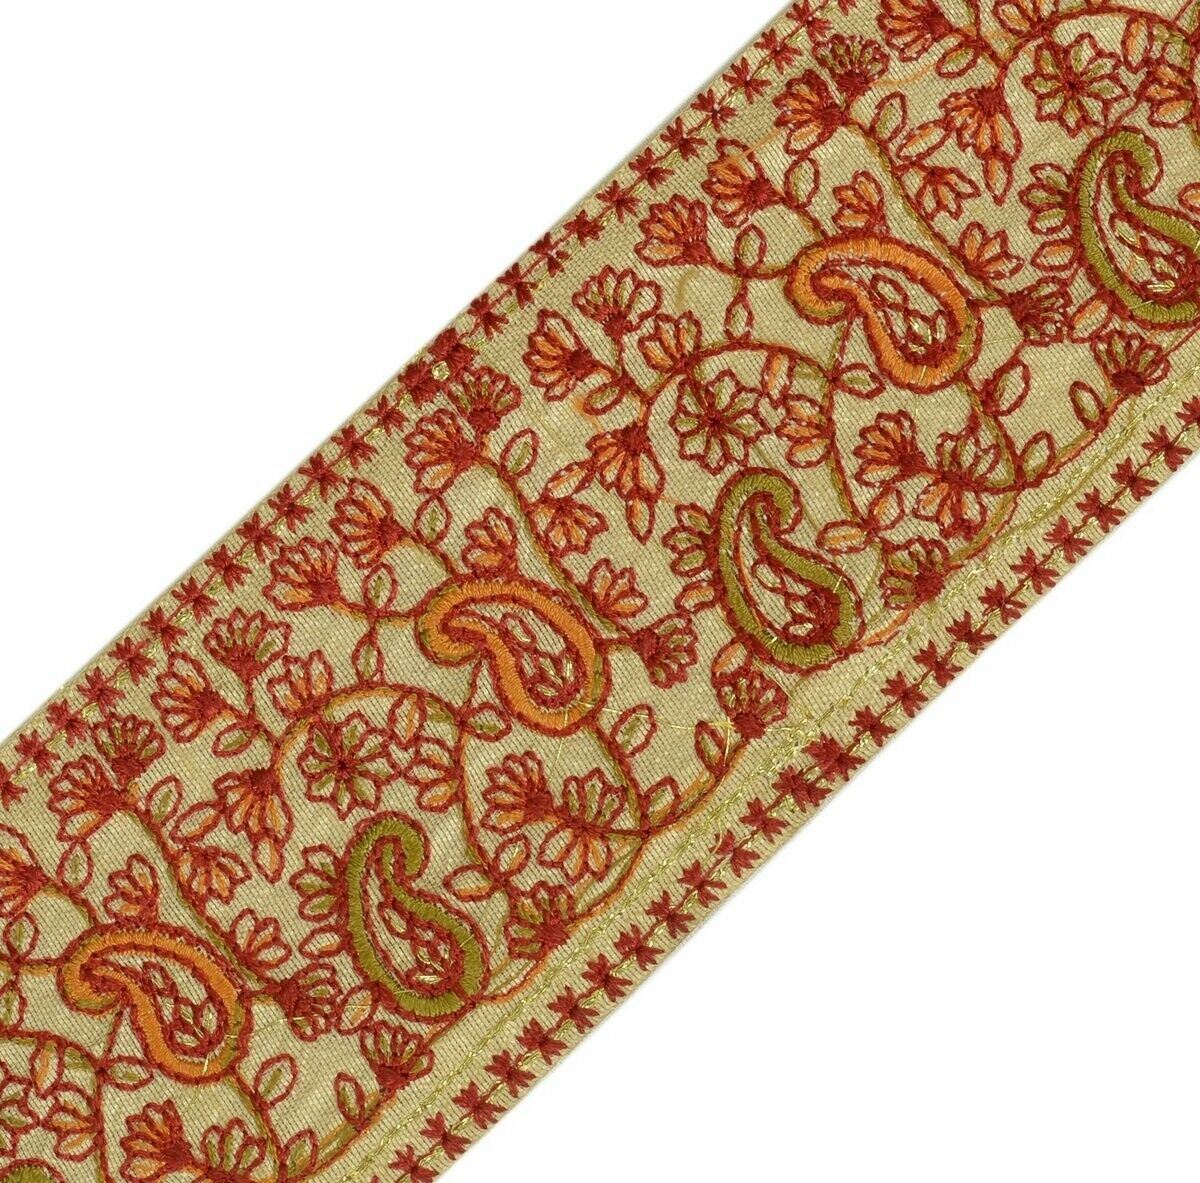 Vintage Sari Border Indian Craft Trim Antique Embroidered Ribbon Lace Cream